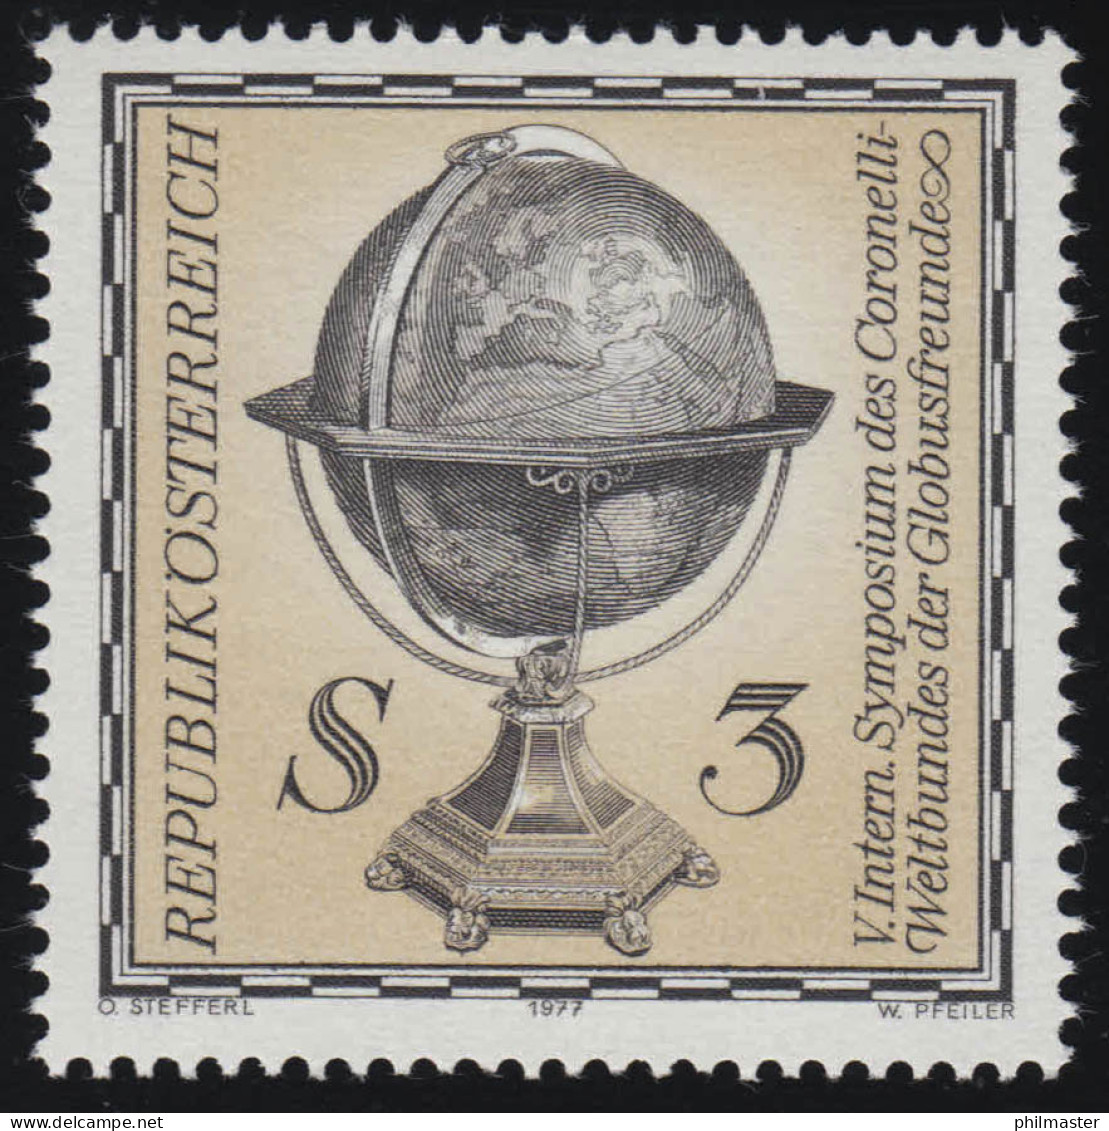 1554 Internationales Symposium Coronelli Weltbund, Erdglobus, 3 S, Postfrisch ** - Nuovi